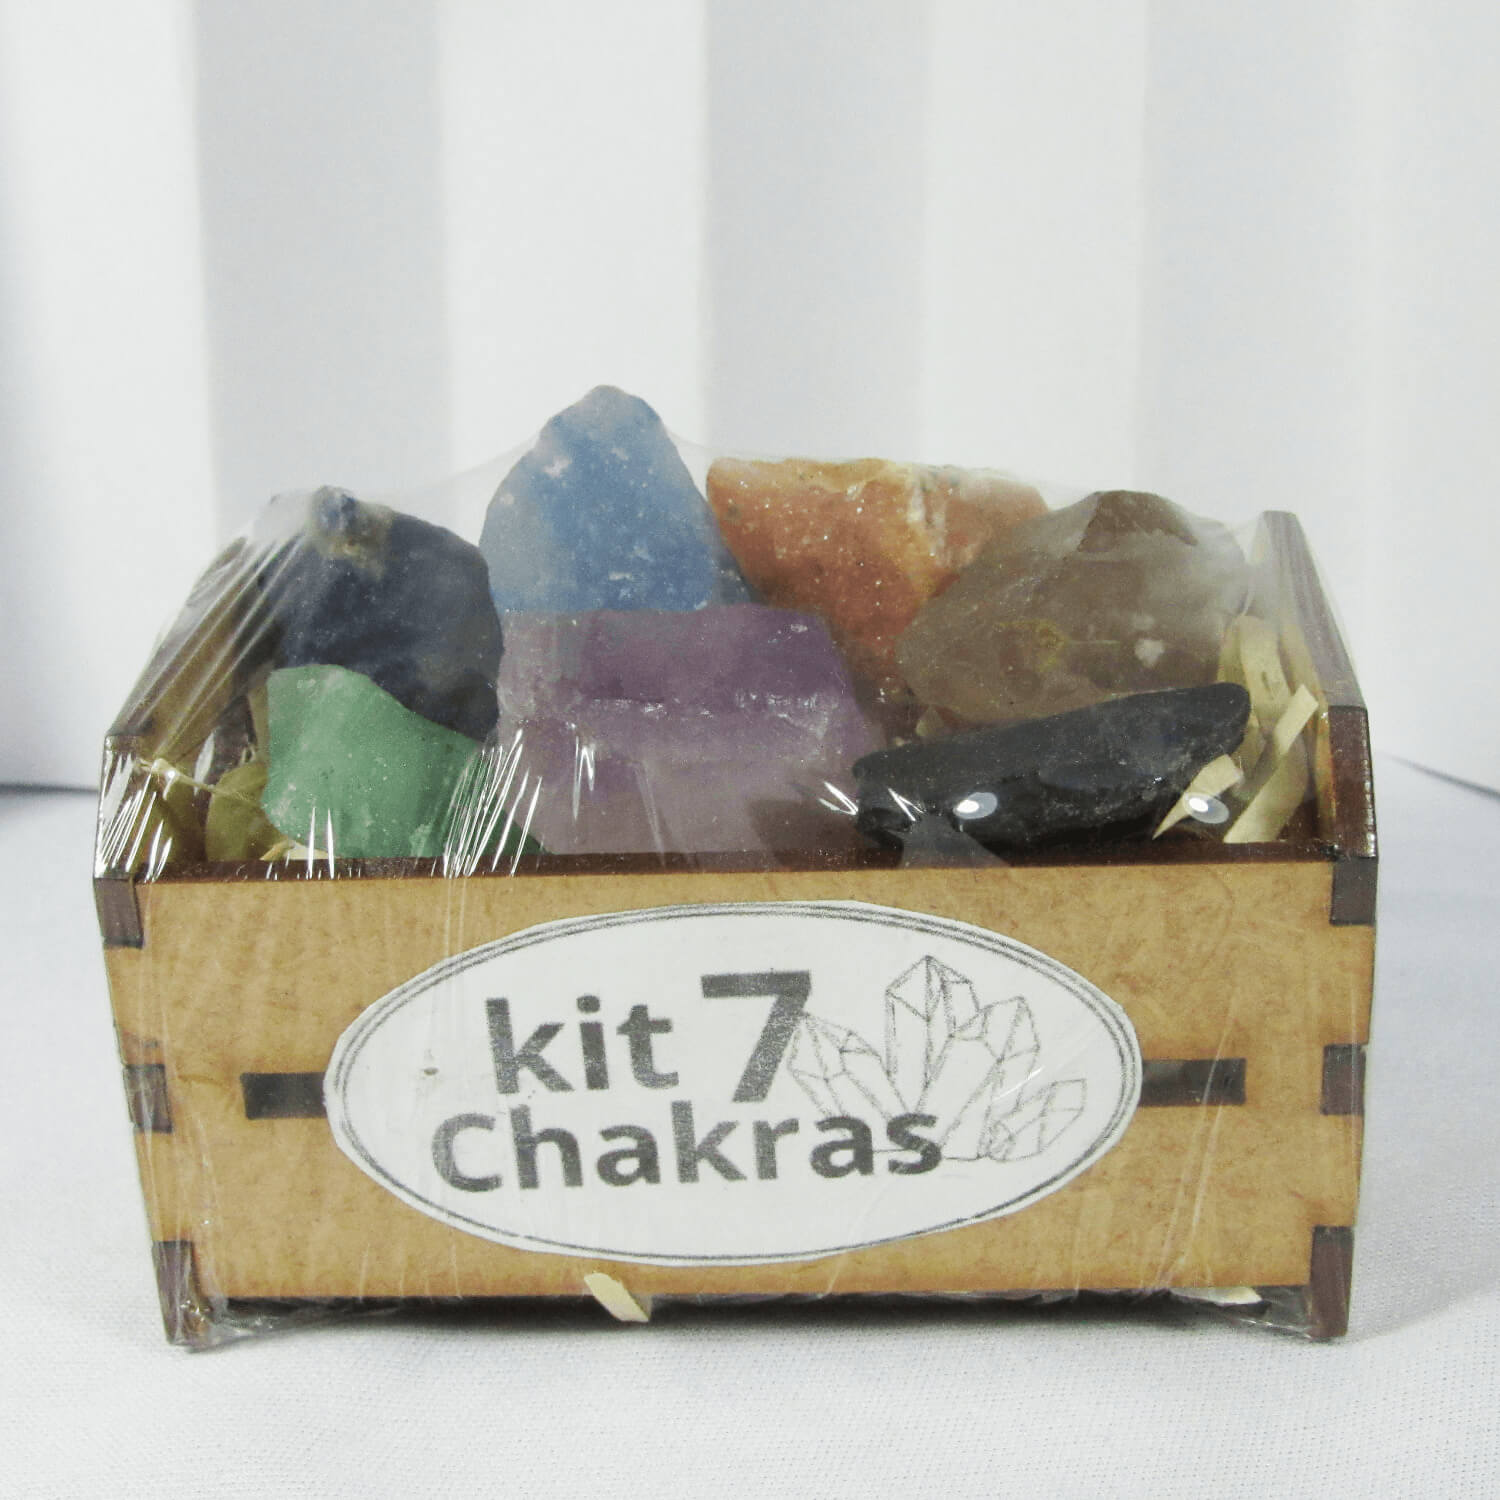 Kit 7 Chakras